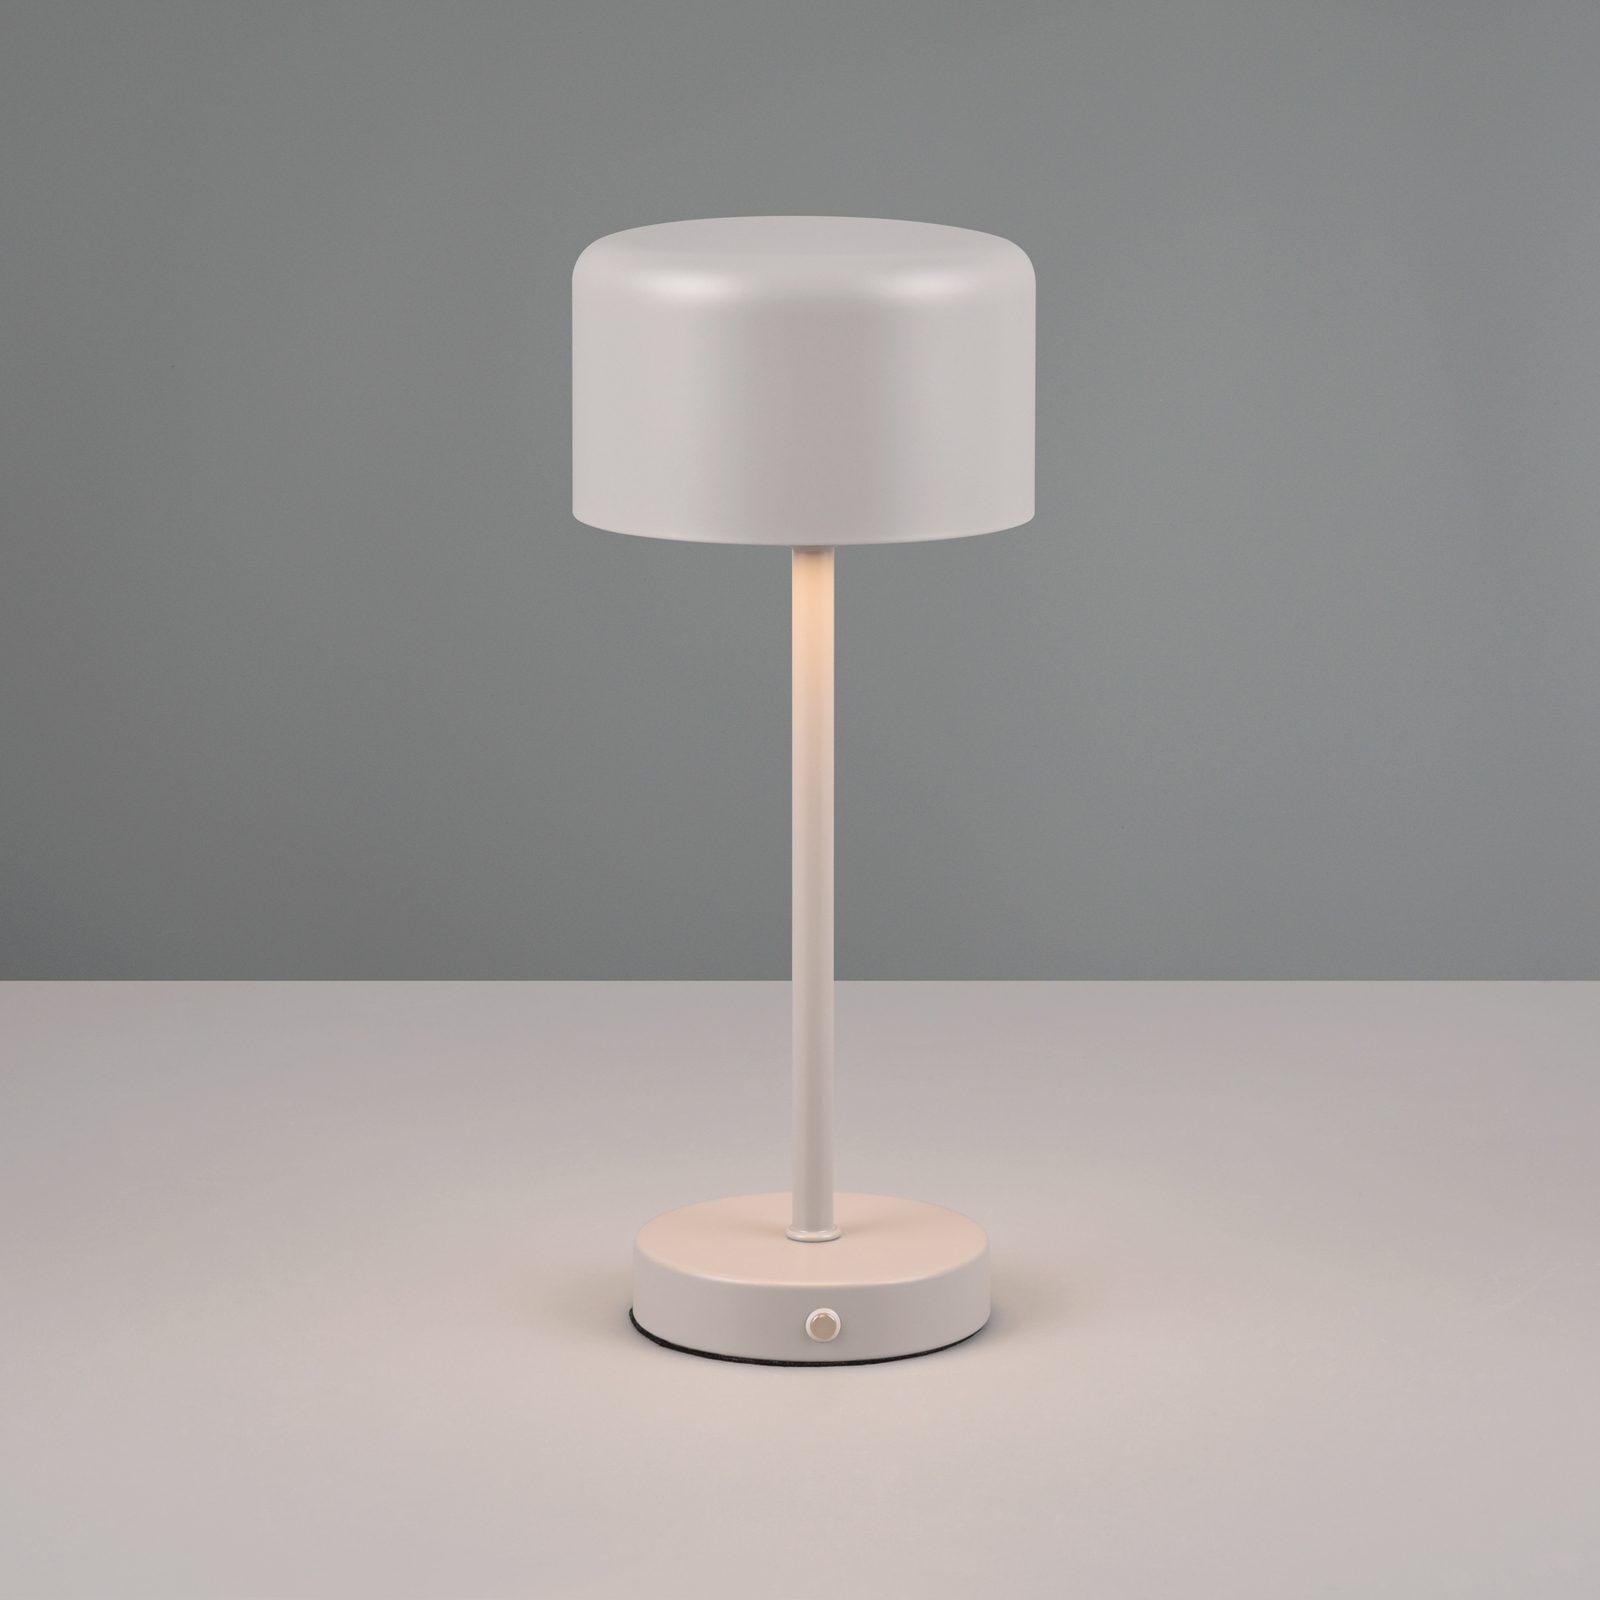 Jeff LED-es újratölthető asztali lámpa, szürke, magasság 30 cm, fém